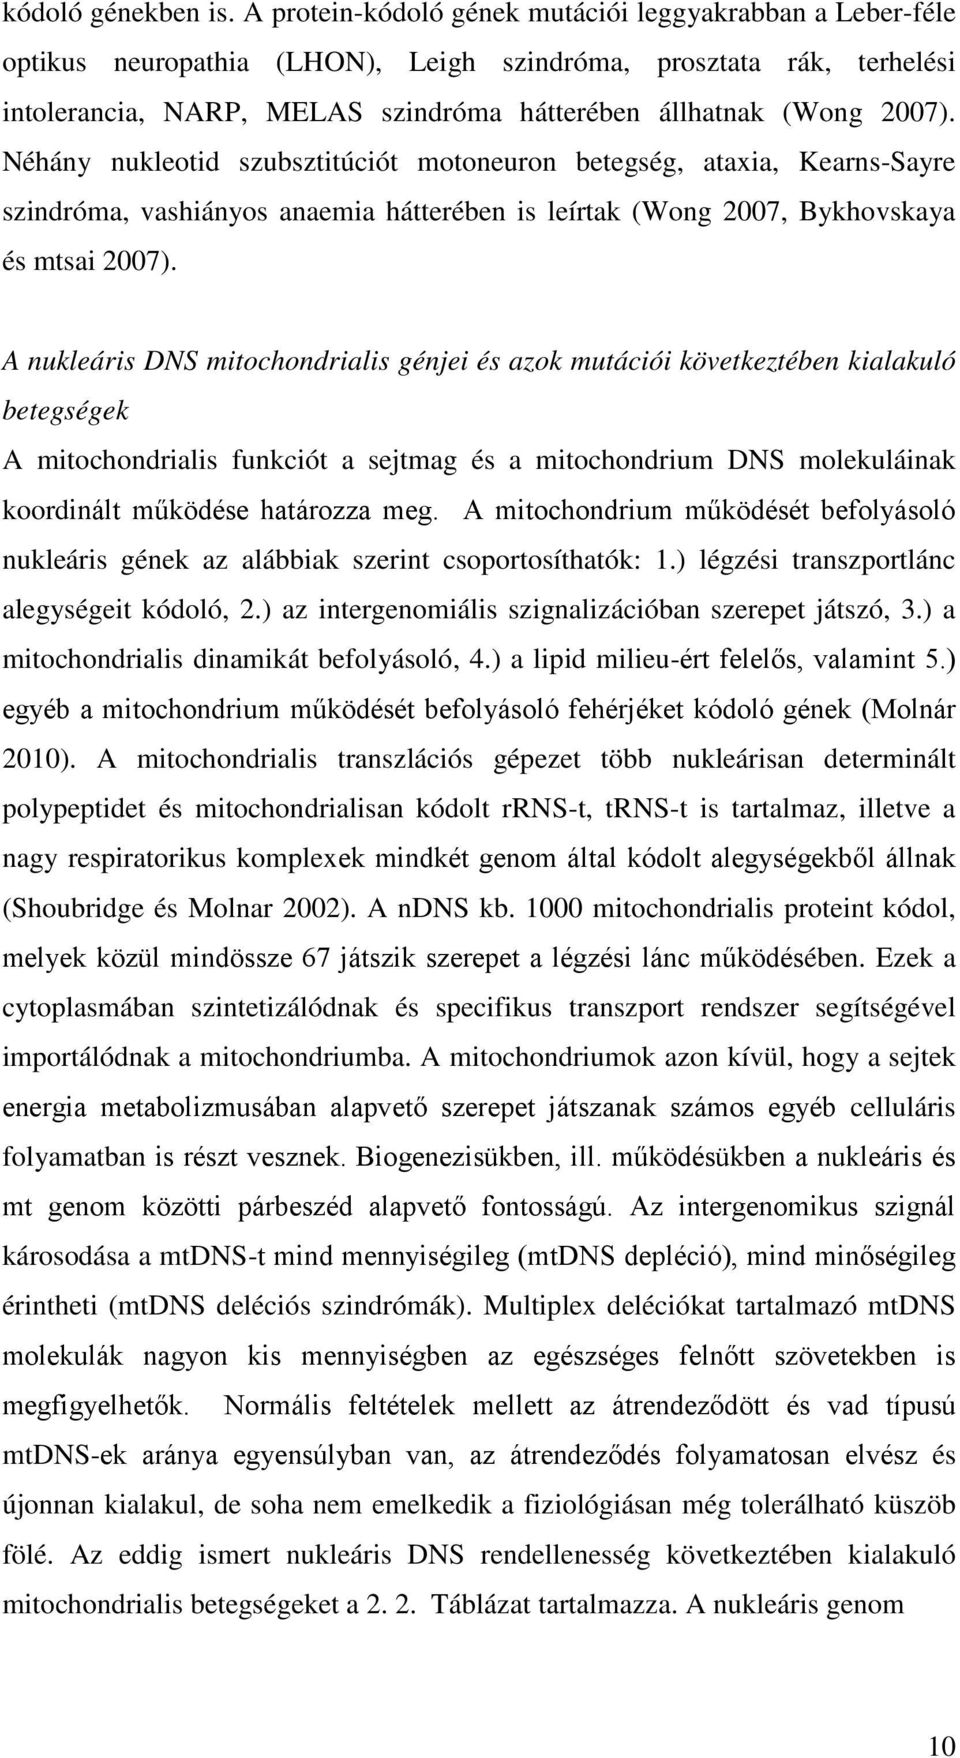 Néhány nukleotid szubsztitúciót motoneuron betegség, ataxia, Kearns-Sayre szindróma, vashiányos anaemia hátterében is leírtak (Wong 2007, Bykhovskaya és mtsai 2007).